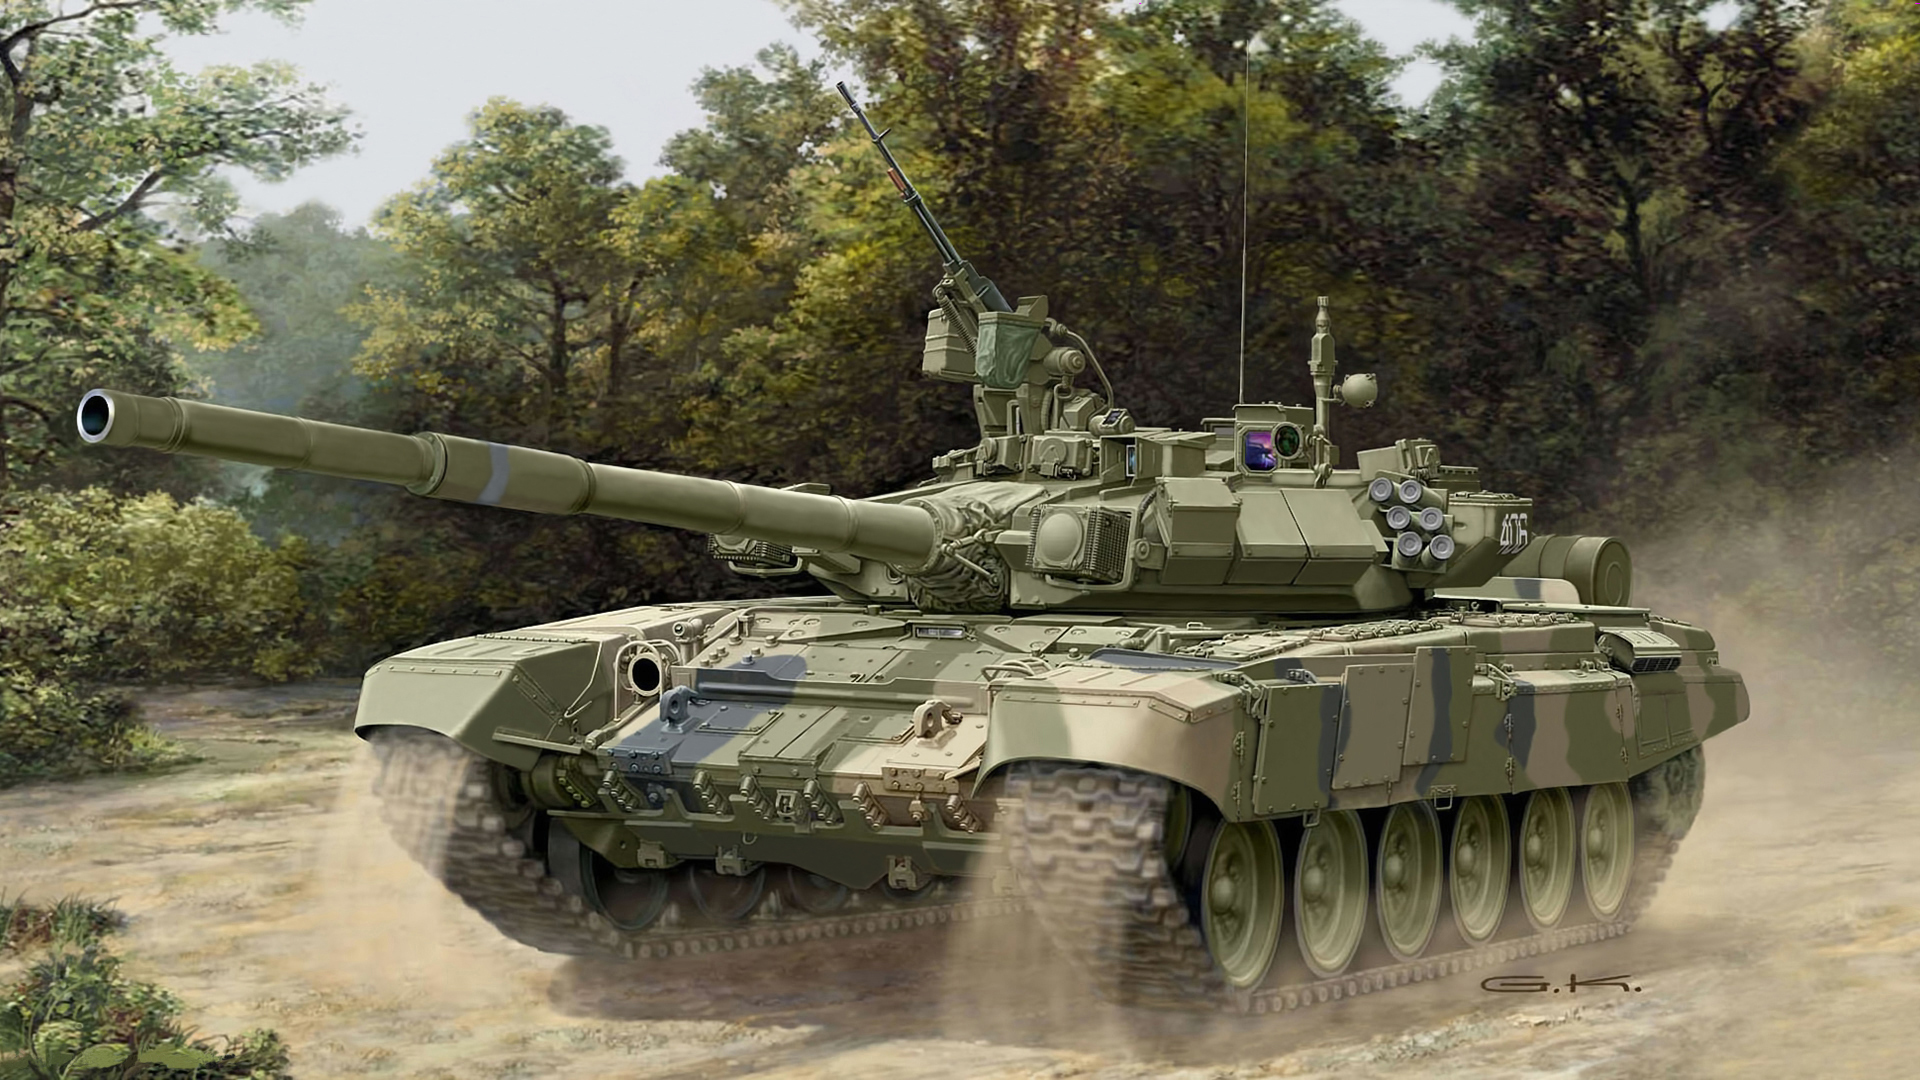 壁紙 19x1080 戦車 描かれた壁紙 T 90 陸軍 ダウンロード 写真